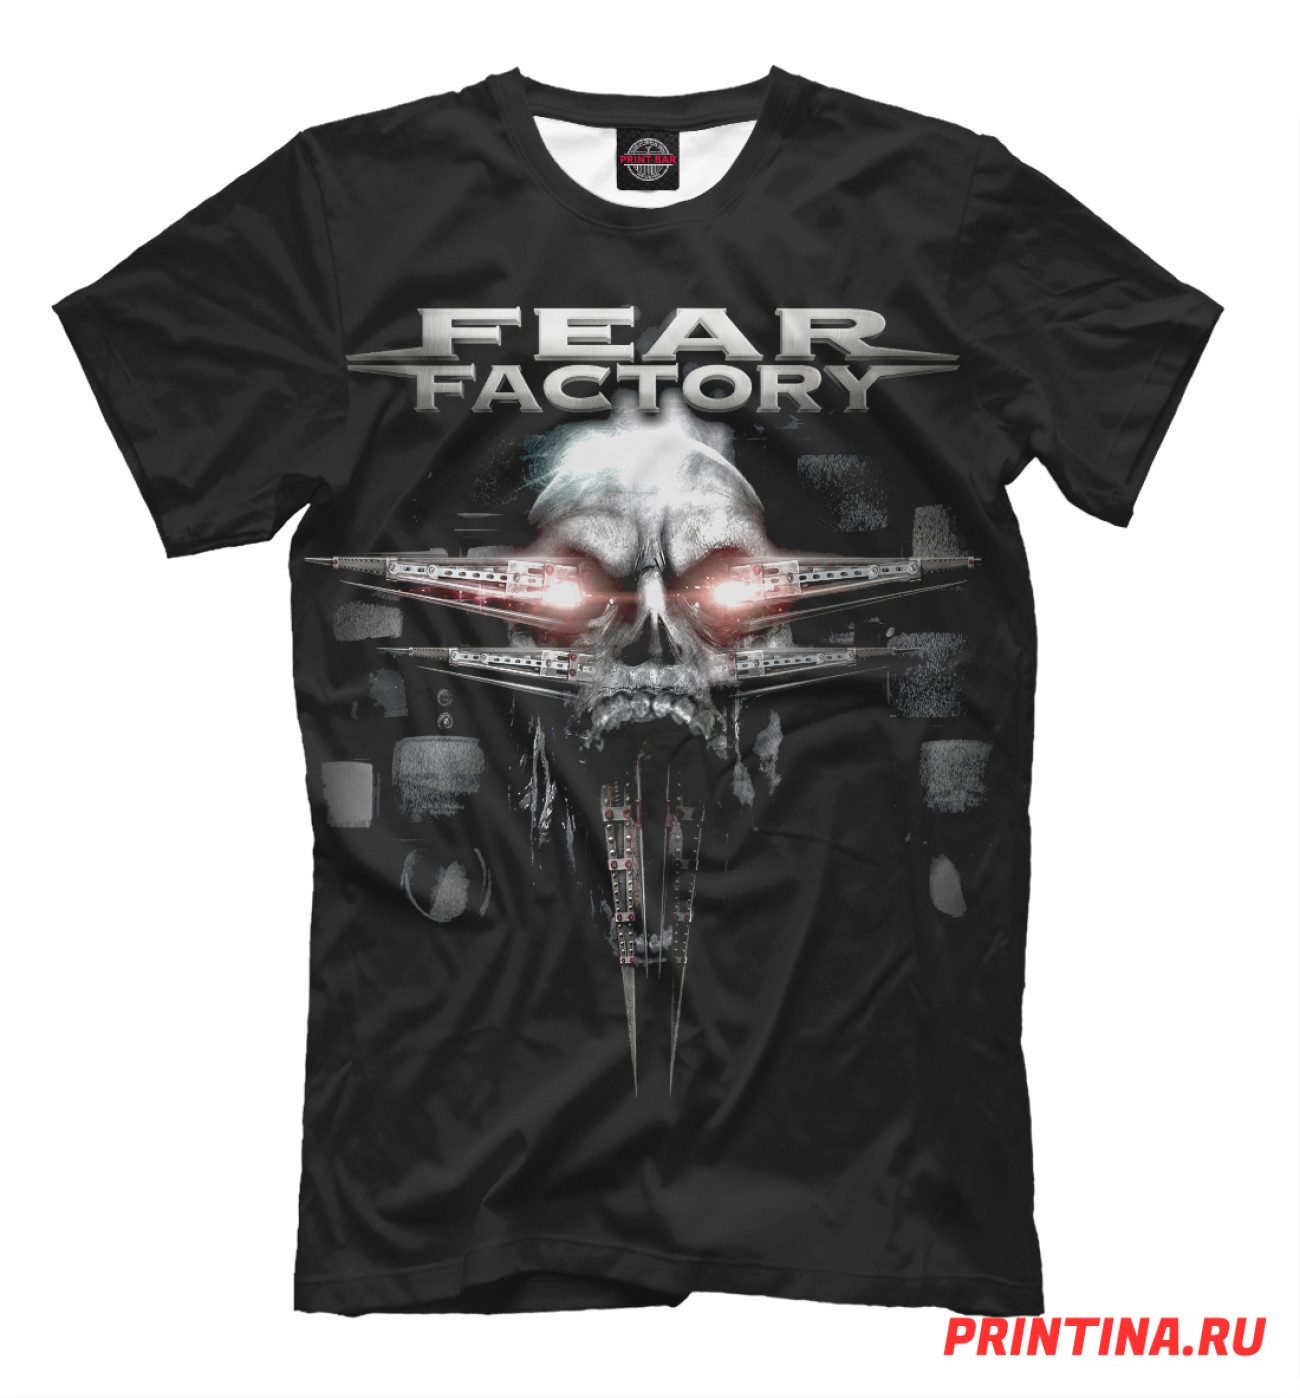 Мужская Футболка Fear Factory, артикул: FFC-890110-fut-2